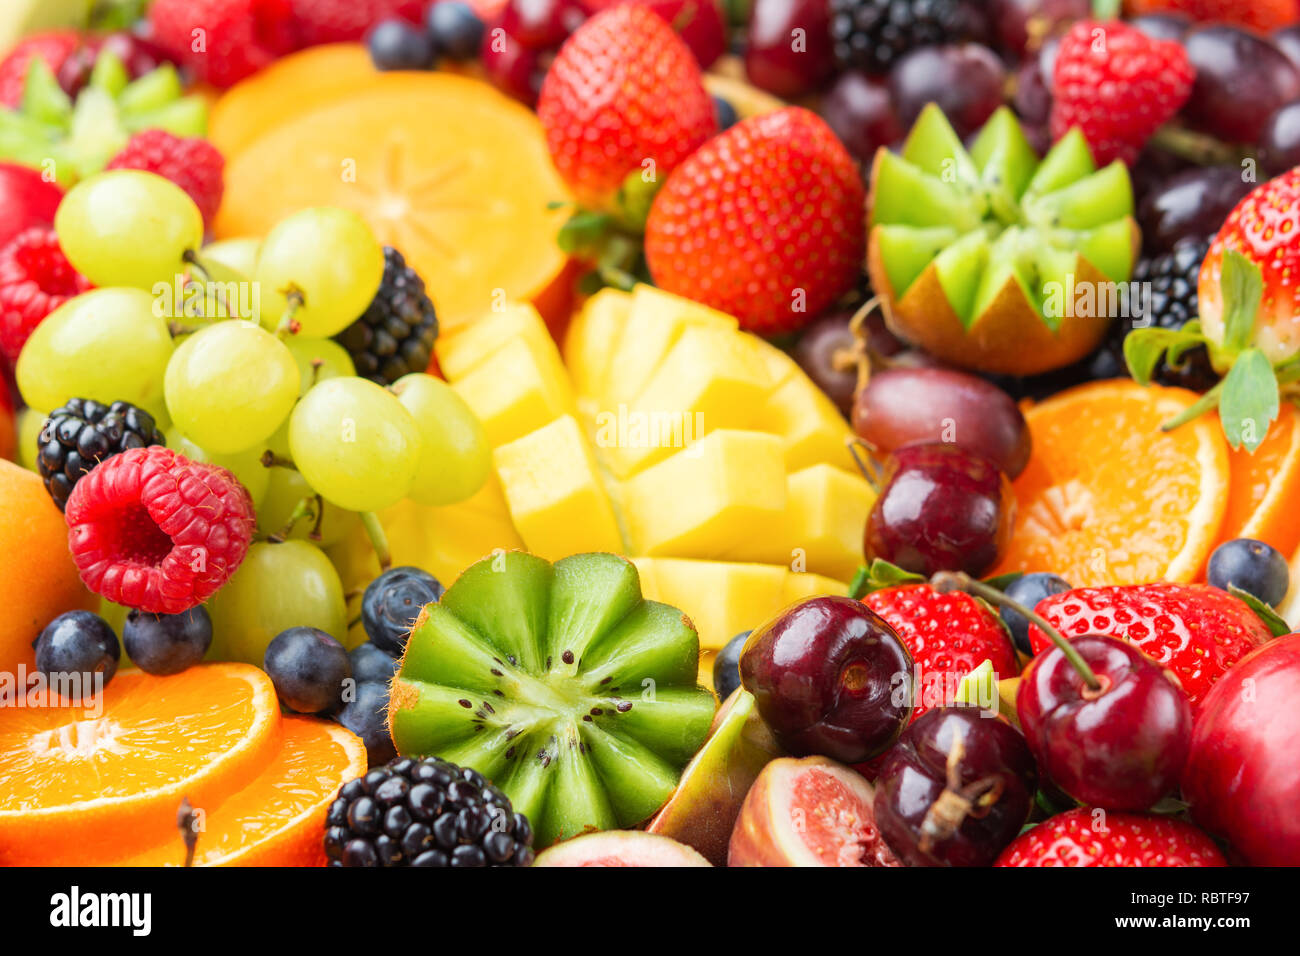 Gesunde Frucht Hintergrund mit Erdbeeren Himbeeren orangen Pflaumen Äpfel gefüllt, Kiwis, Weintrauben, Heidelbeeren mango Kaki Ananas Stockfoto